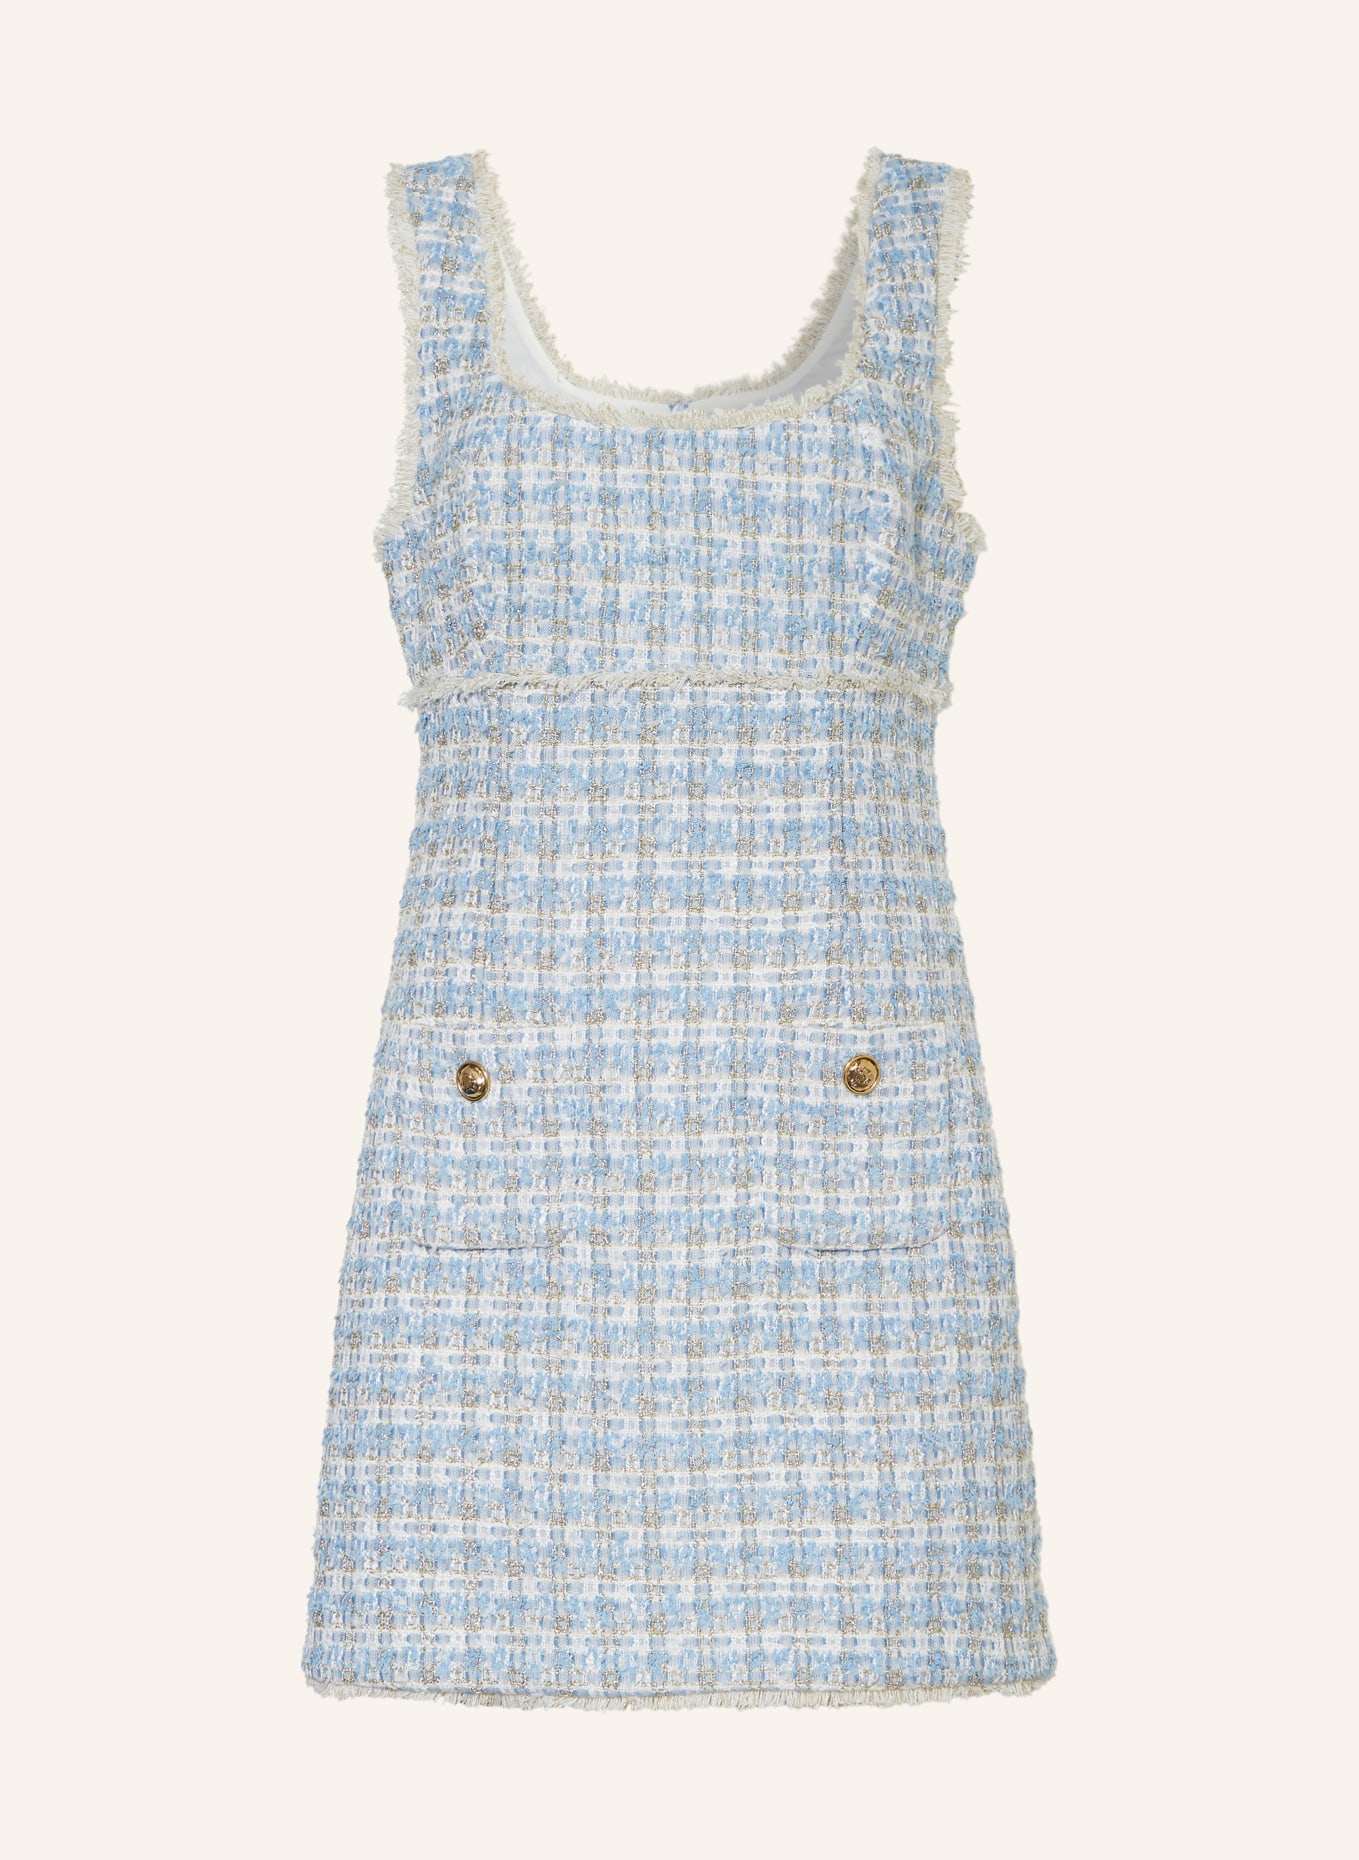 SANDRO Tweed-Kleid mit Glitzergarn, Farbe: BLAU/ SILBER/ WEISS (Bild 1)